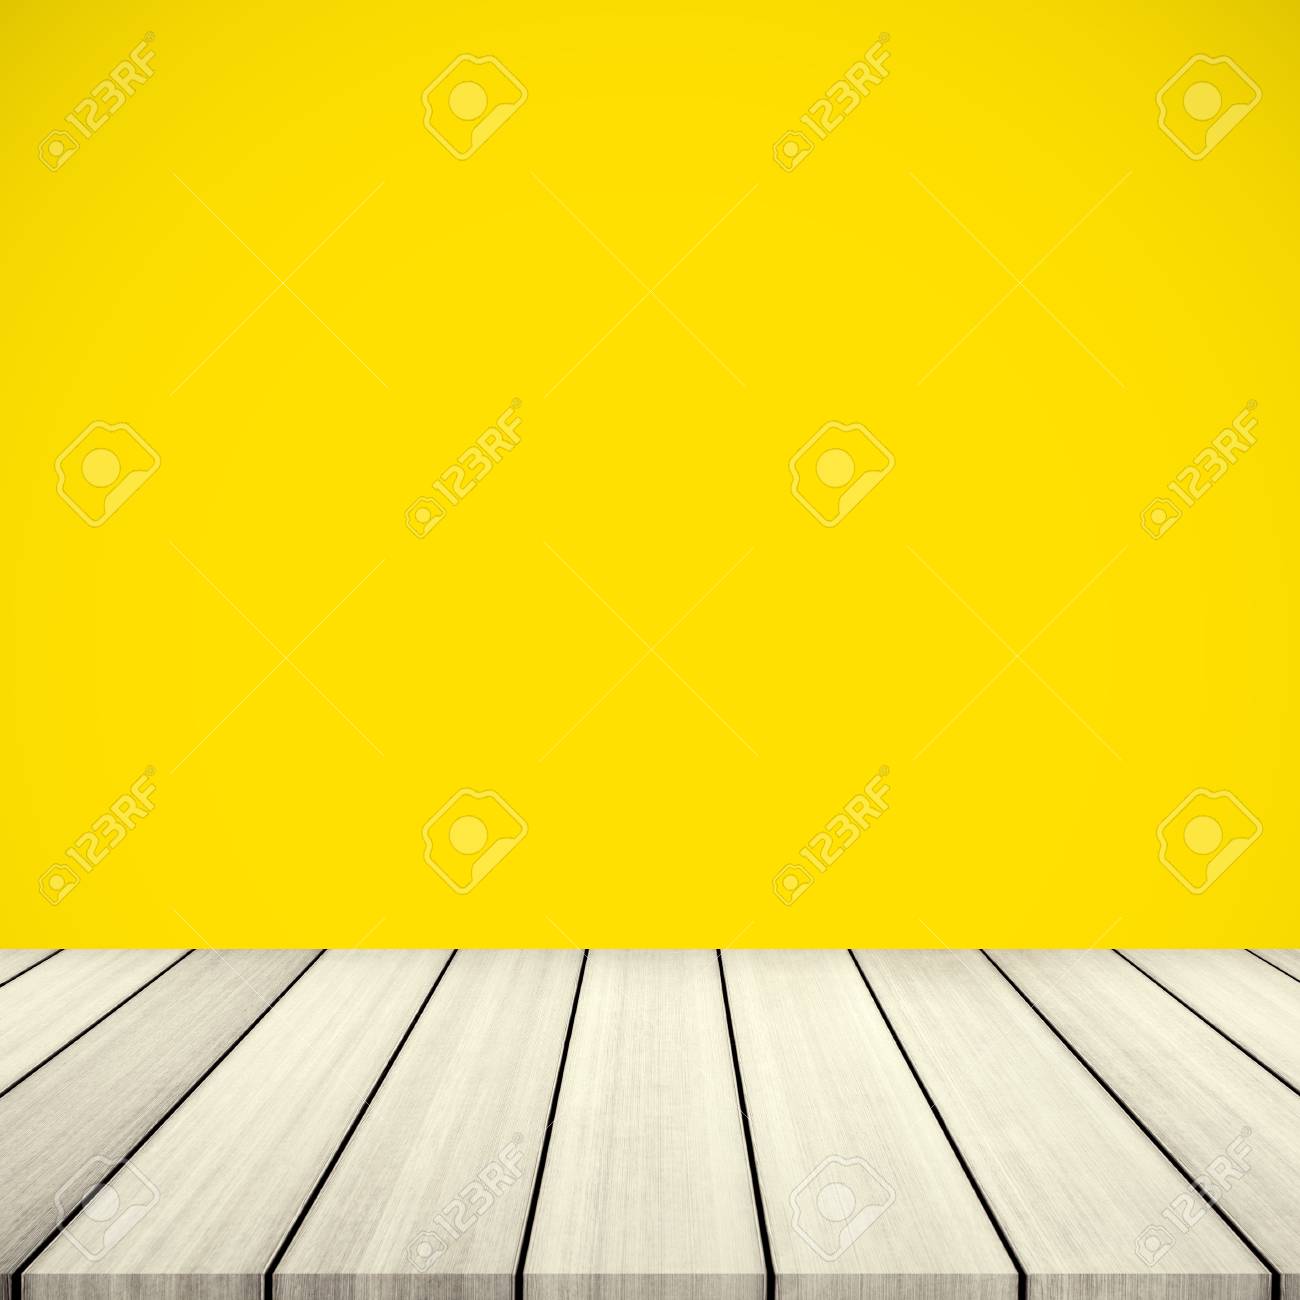 Bộ bàn ăn ngoài trời bằng gỗ màu vàng ấm áp và mịn màng đang chờ đón bạn trong hình nền đẹp như tranh. Với sự kết hợp hoàn hảo giữa màu sắc và chất liệu, đây chắc chắn sẽ là nơi bạn muốn tìm thấy sự thư giãn và yên tĩnh nhất.